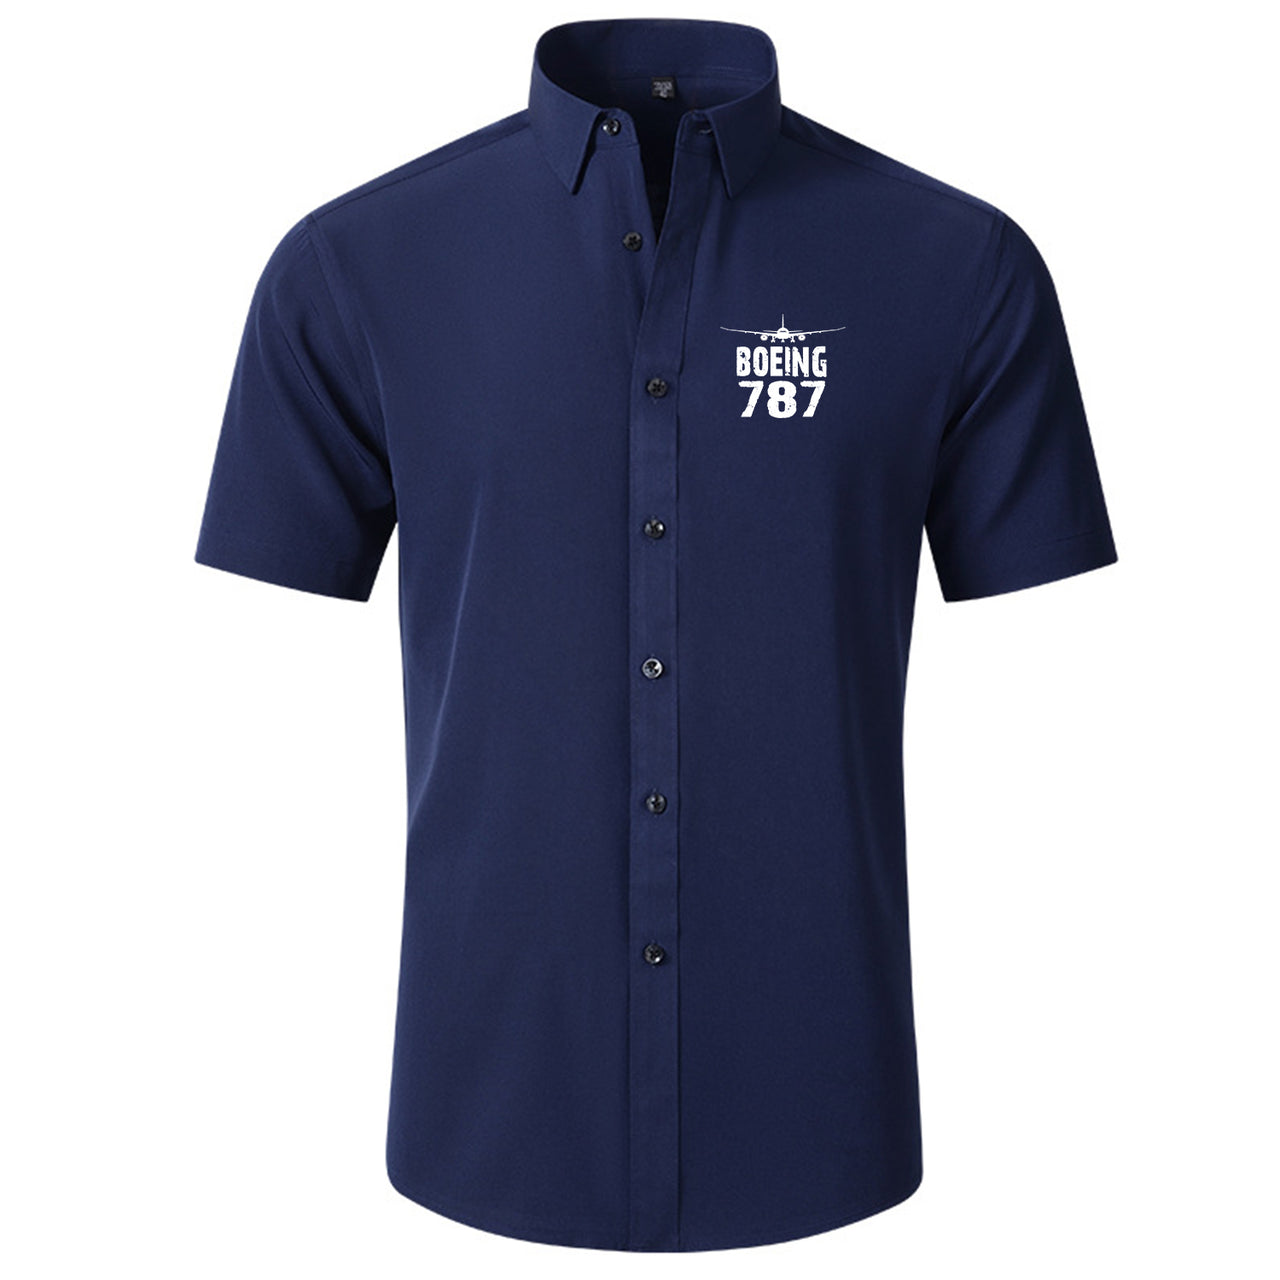 Boeing 787 & Plane Designed Short Sleeve Shirts